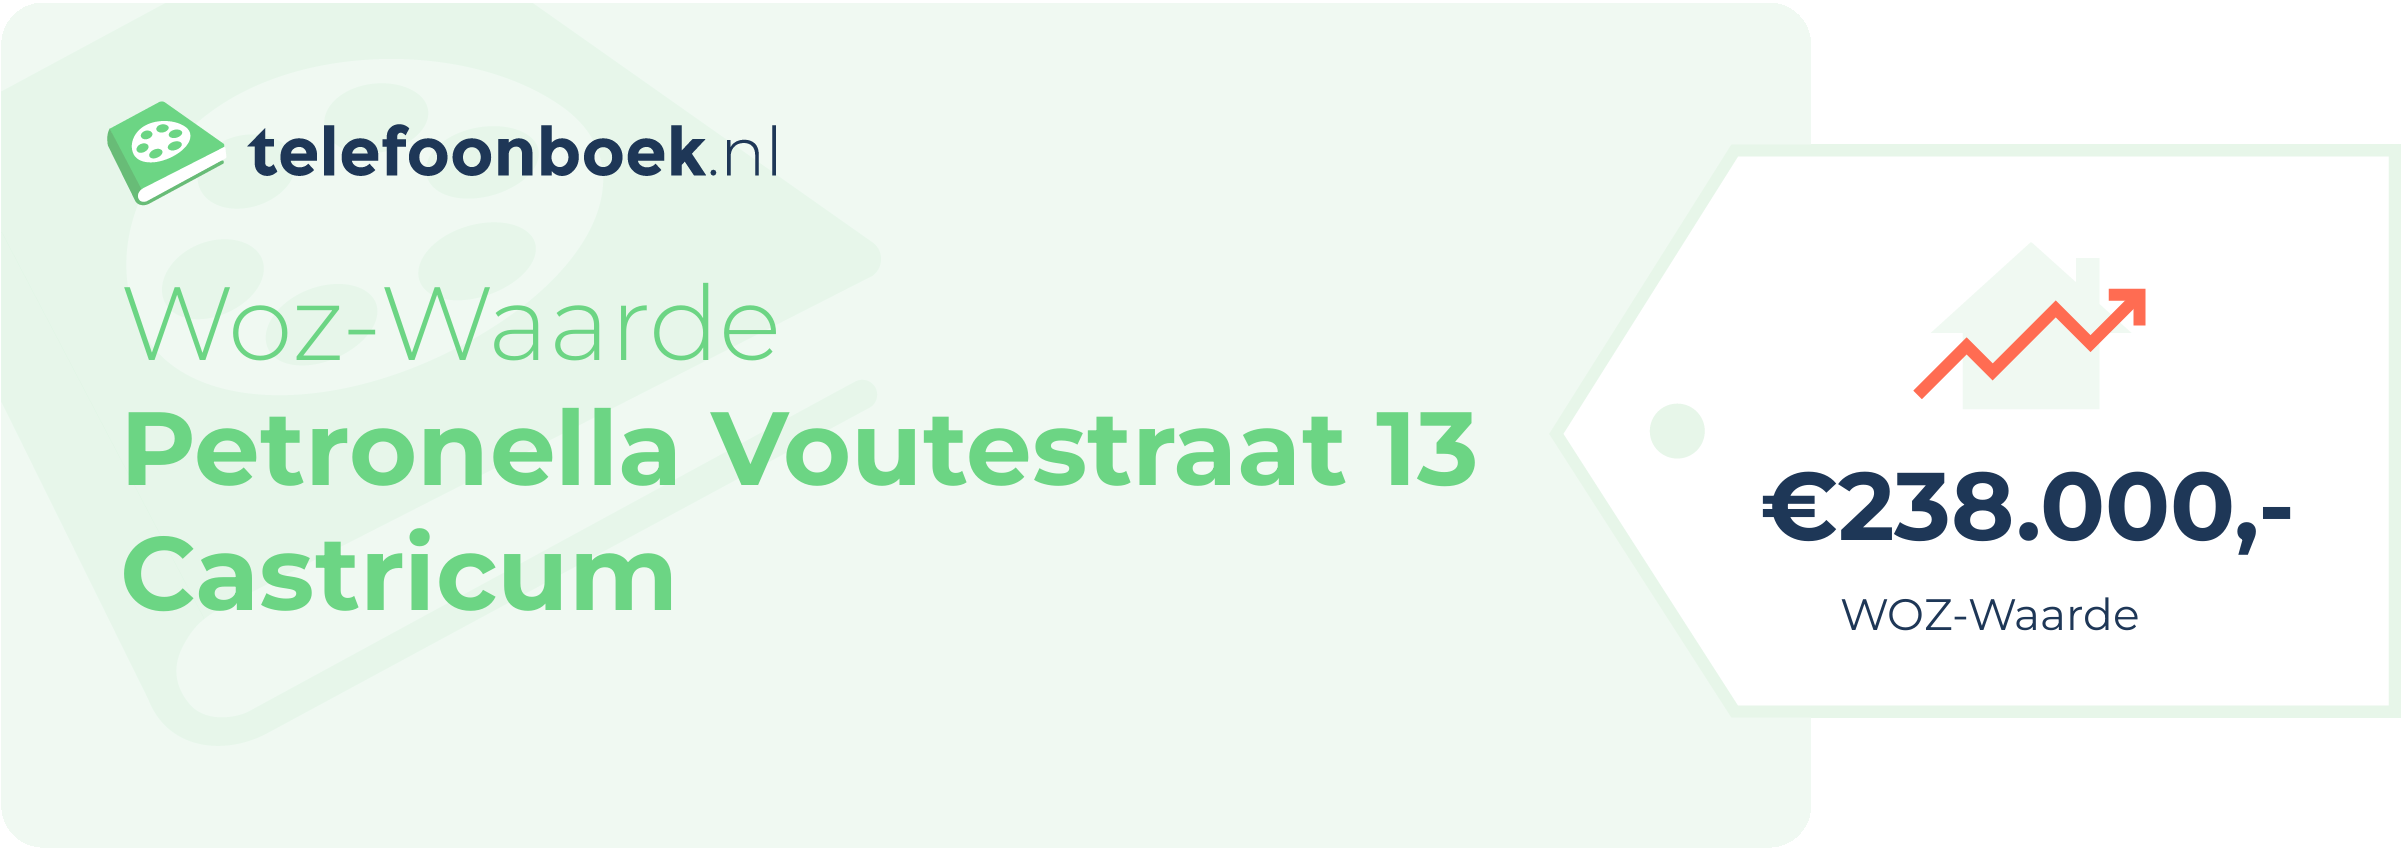 WOZ-waarde Petronella Voutestraat 13 Castricum